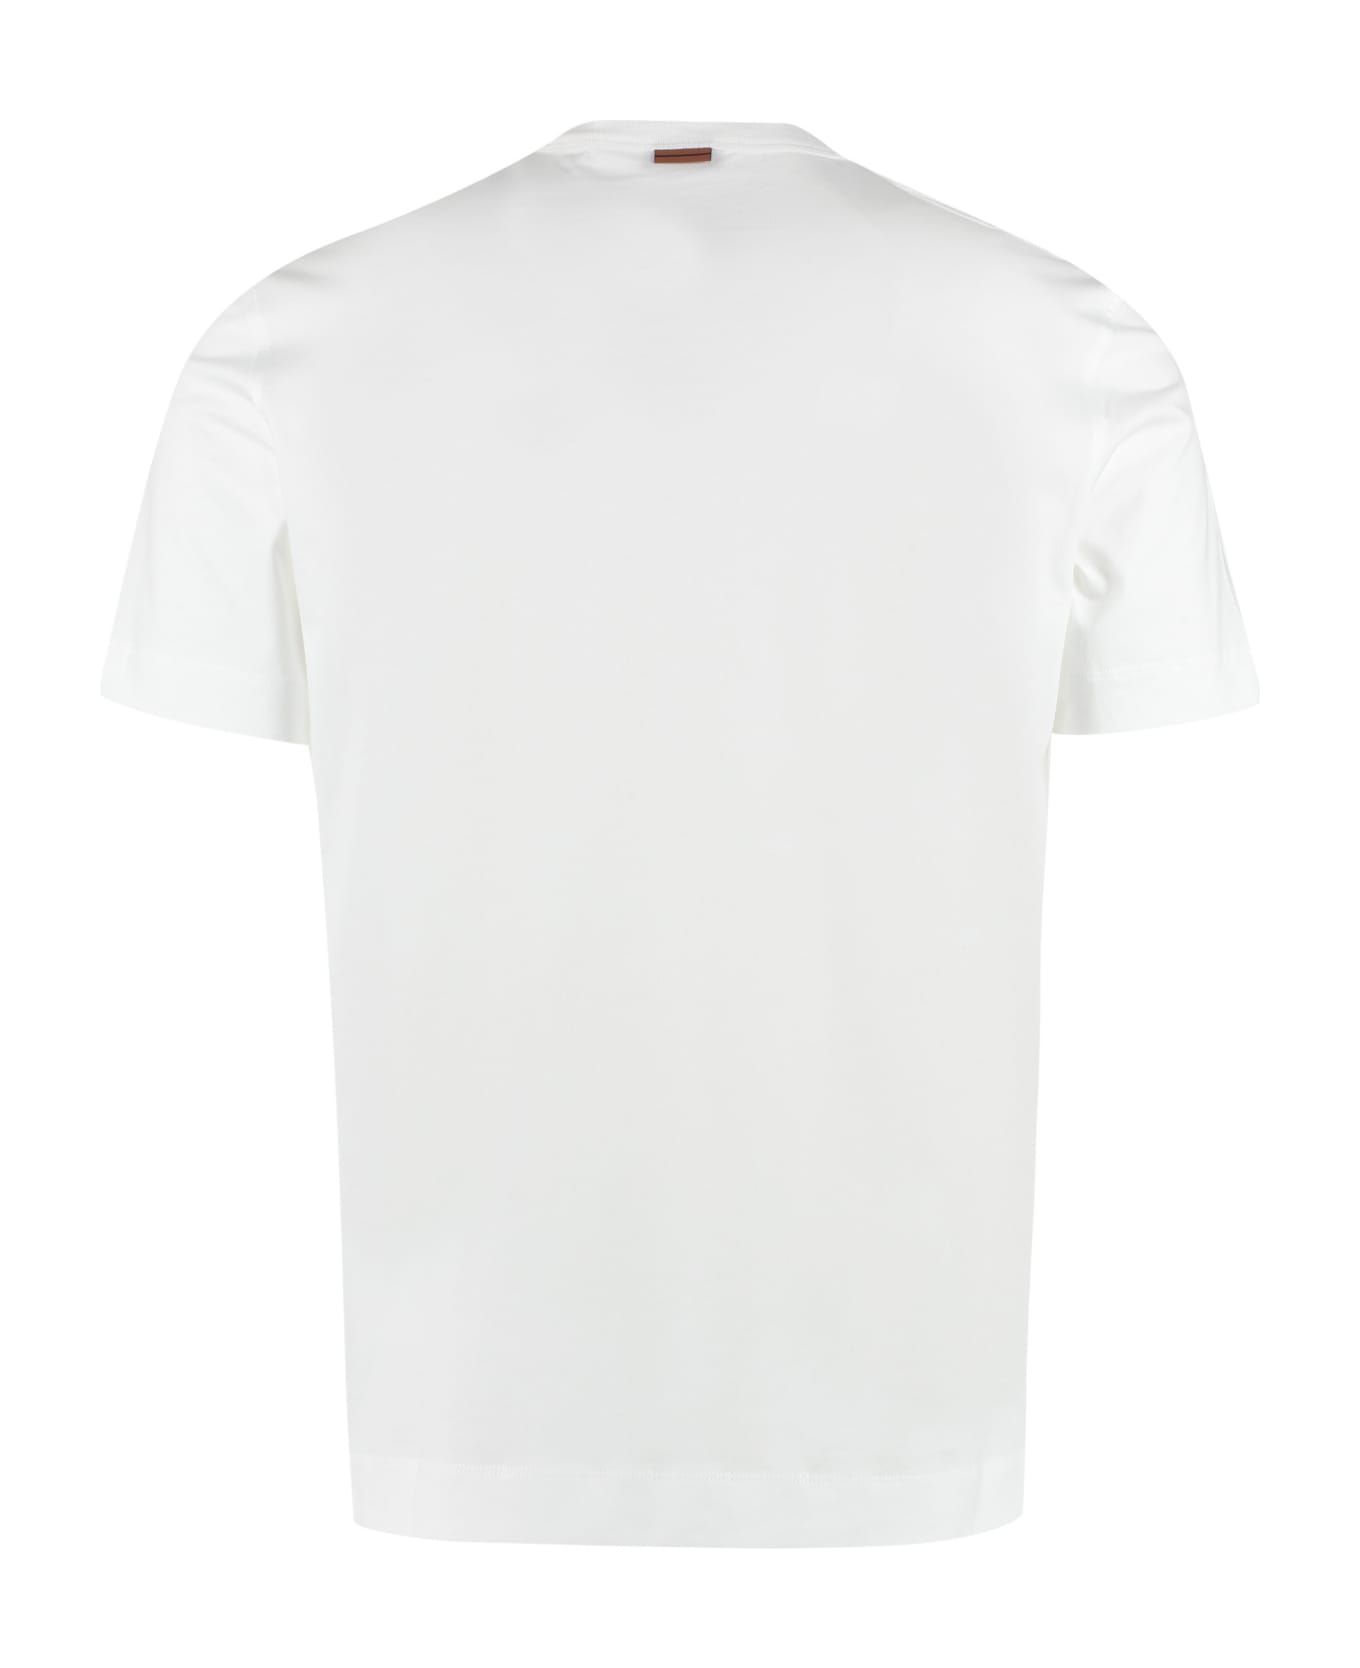 Zegna Logo Cotton T-shirt - White シャツ